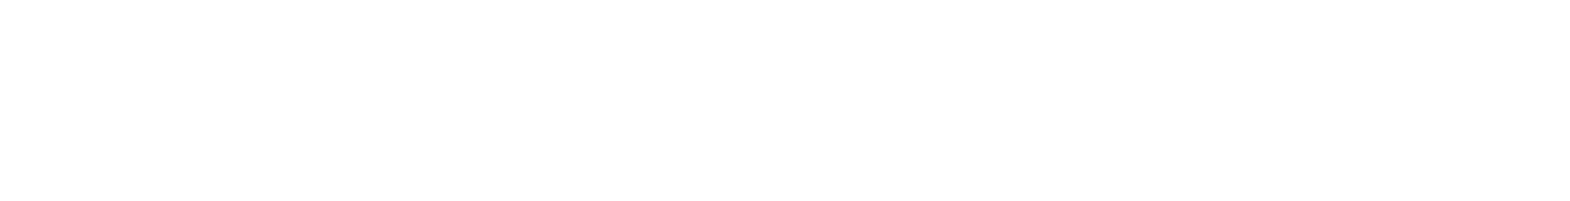 Pkp Cargo logo grand pour les fonds sombres (PNG transparent)